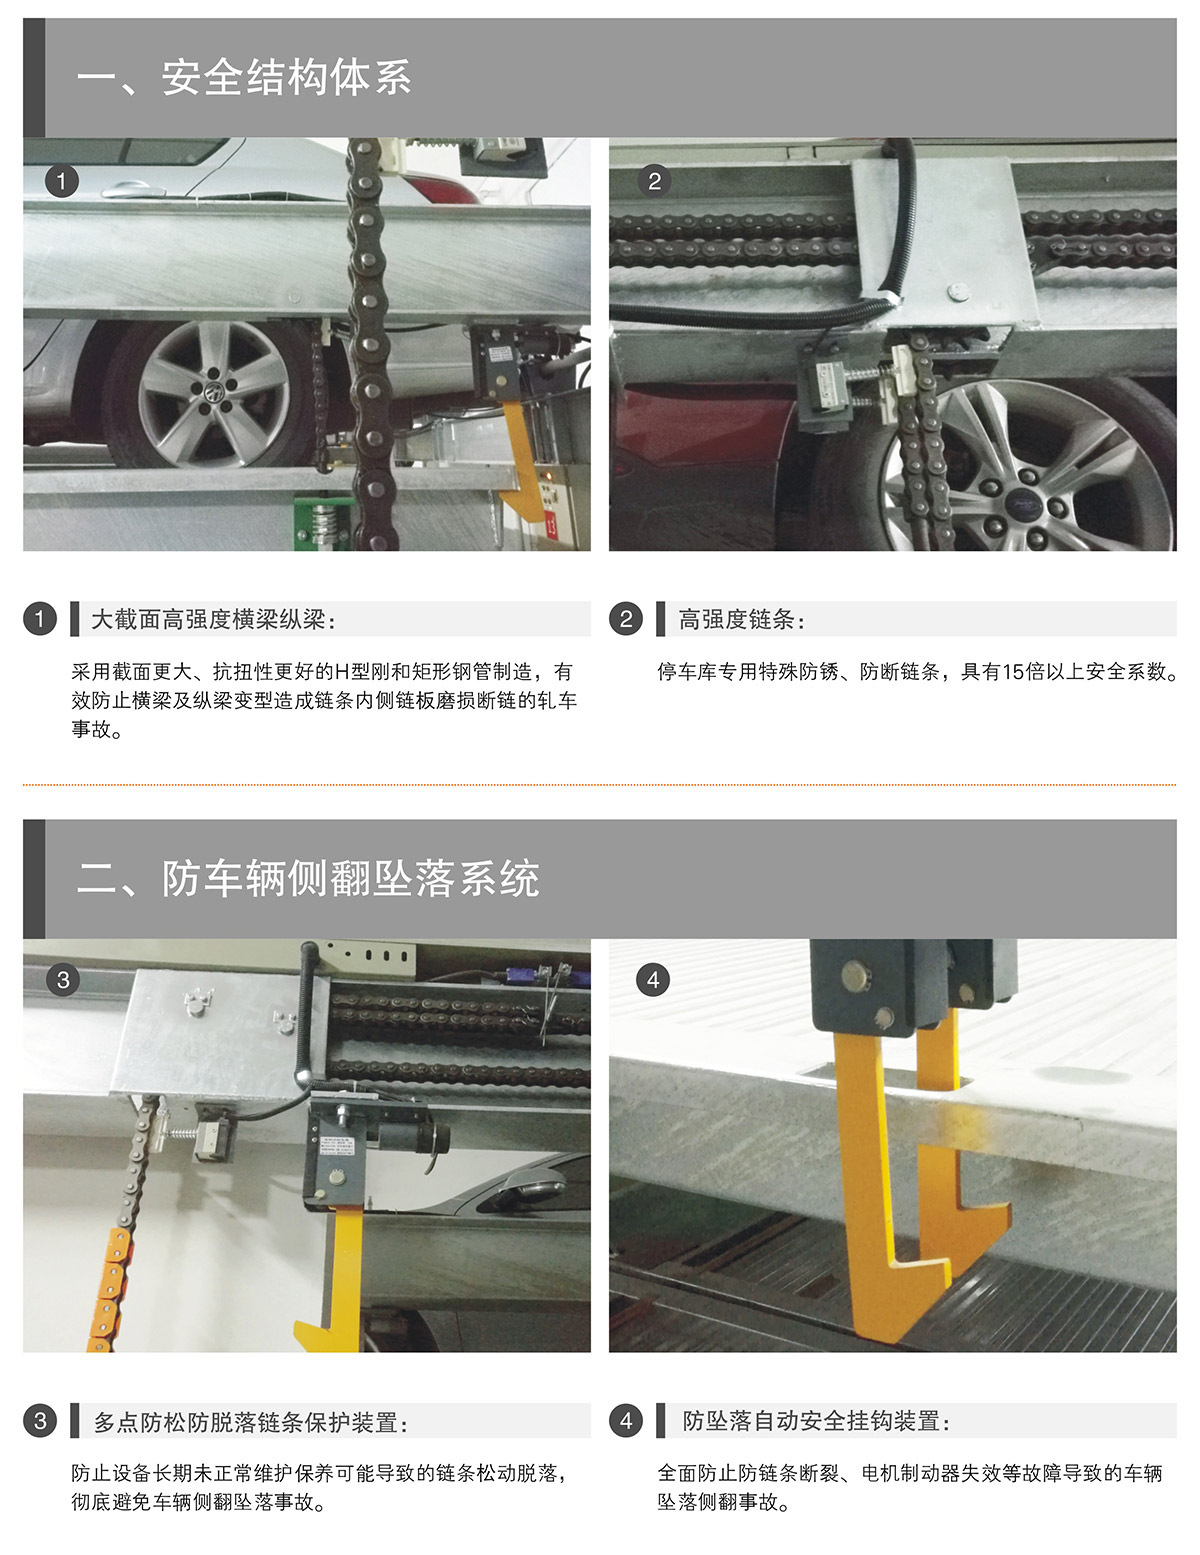 机械式停车PSH升降横移立体停车安全结构体系.jpg